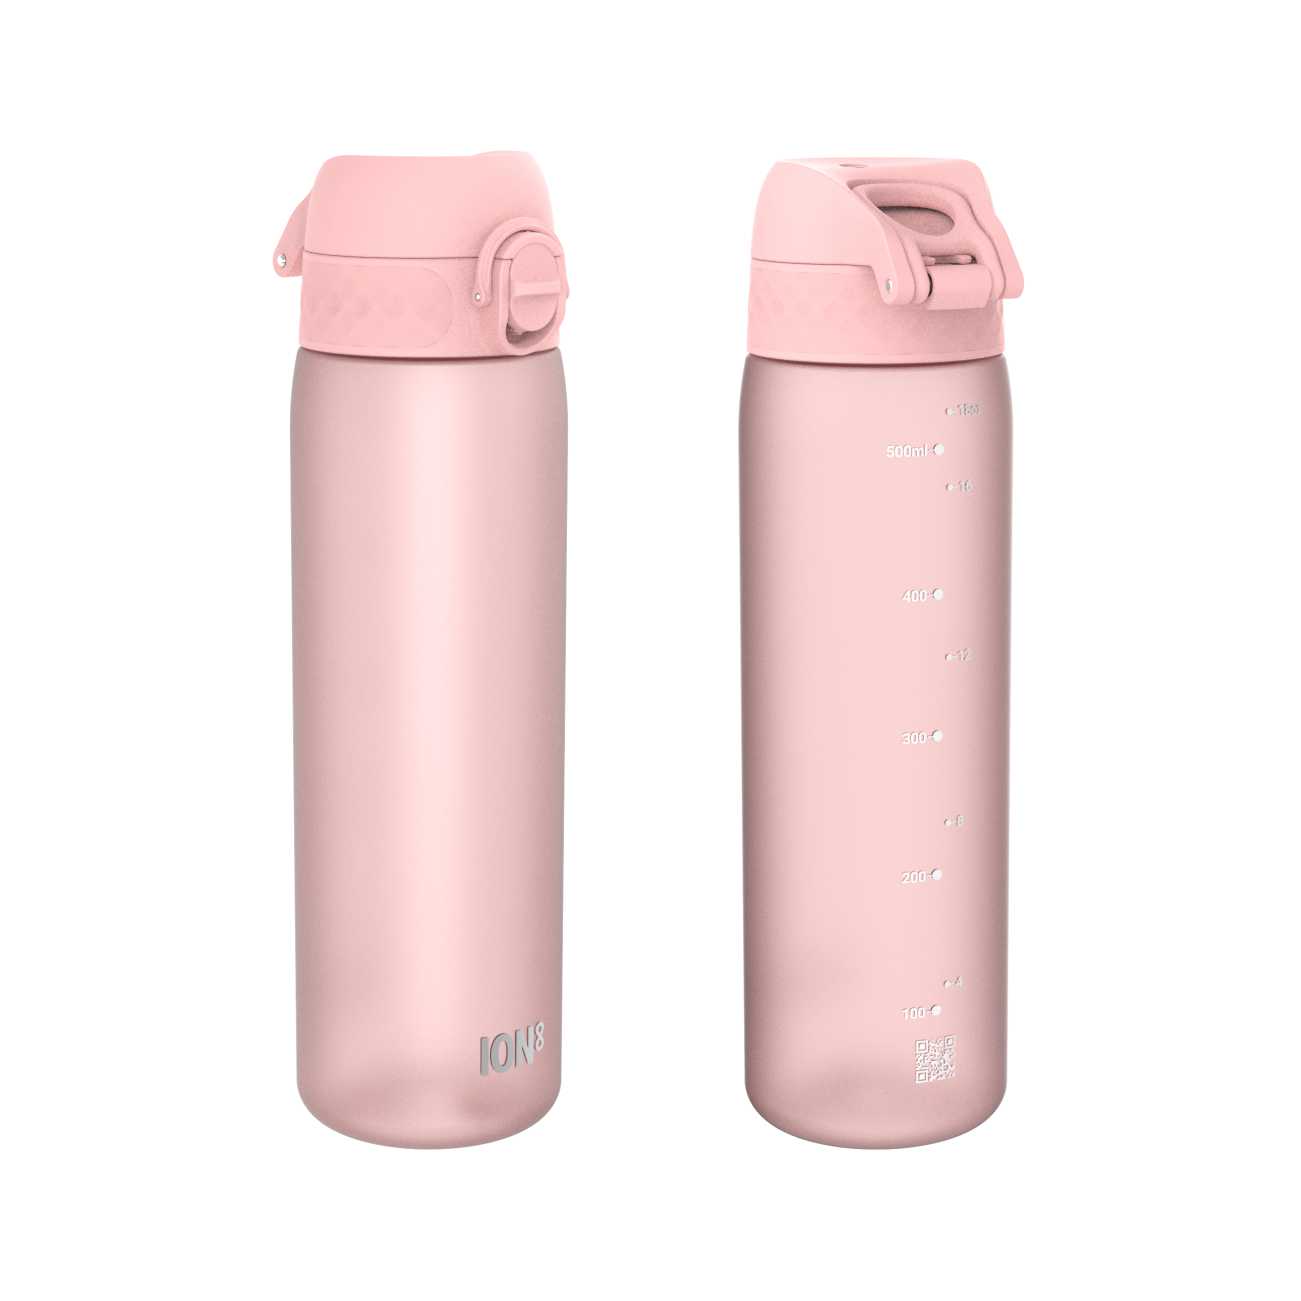 butelka firmowa bidon na wodę ion8 500ml różowa